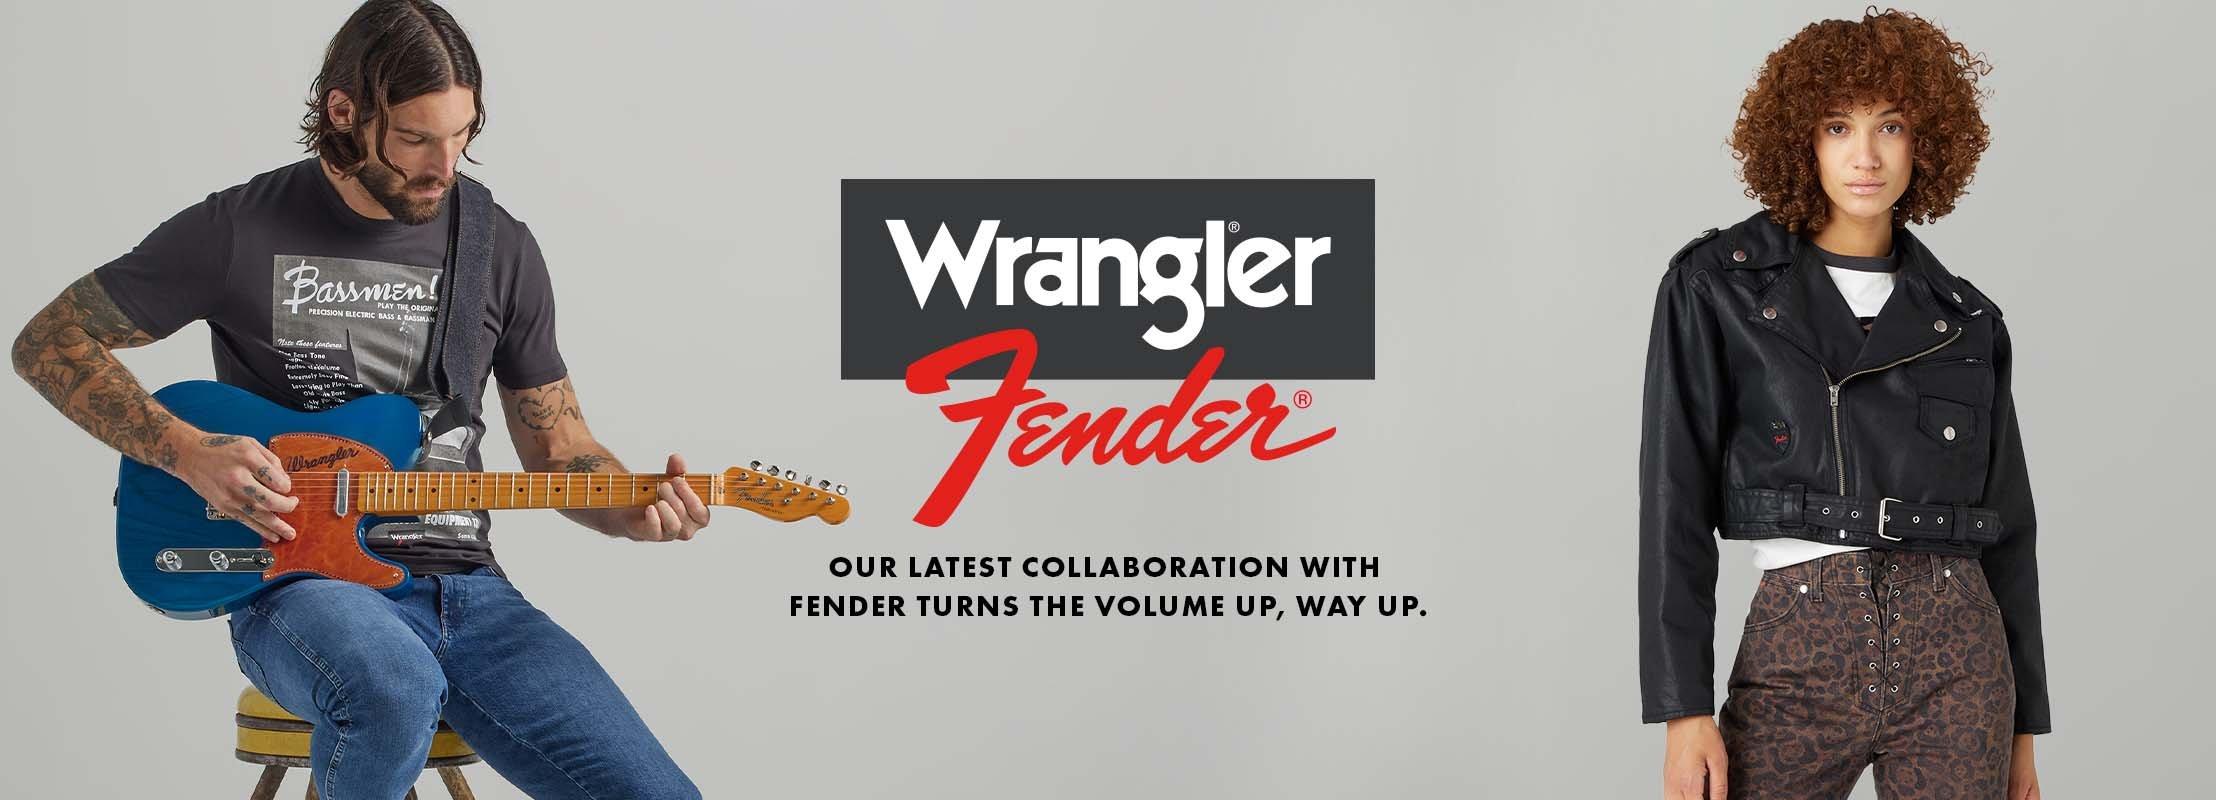 Wrangler x Fender